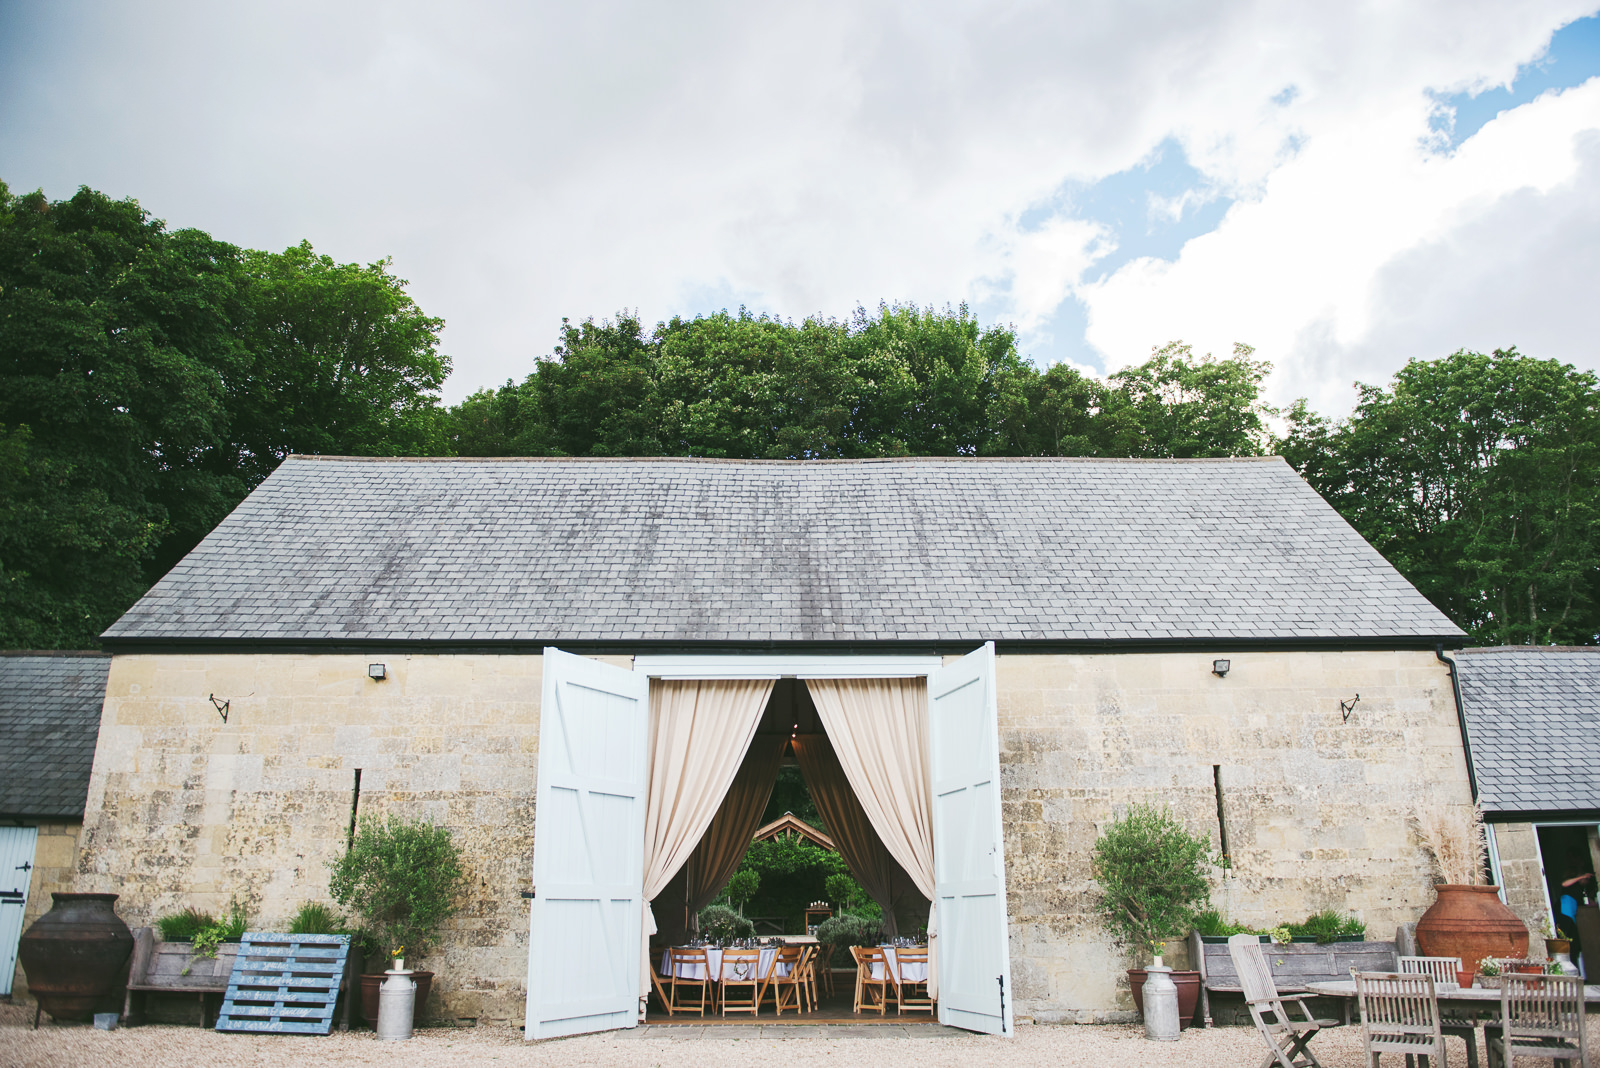 Ashley Wood farm barn set for a relaxed wedding reception.